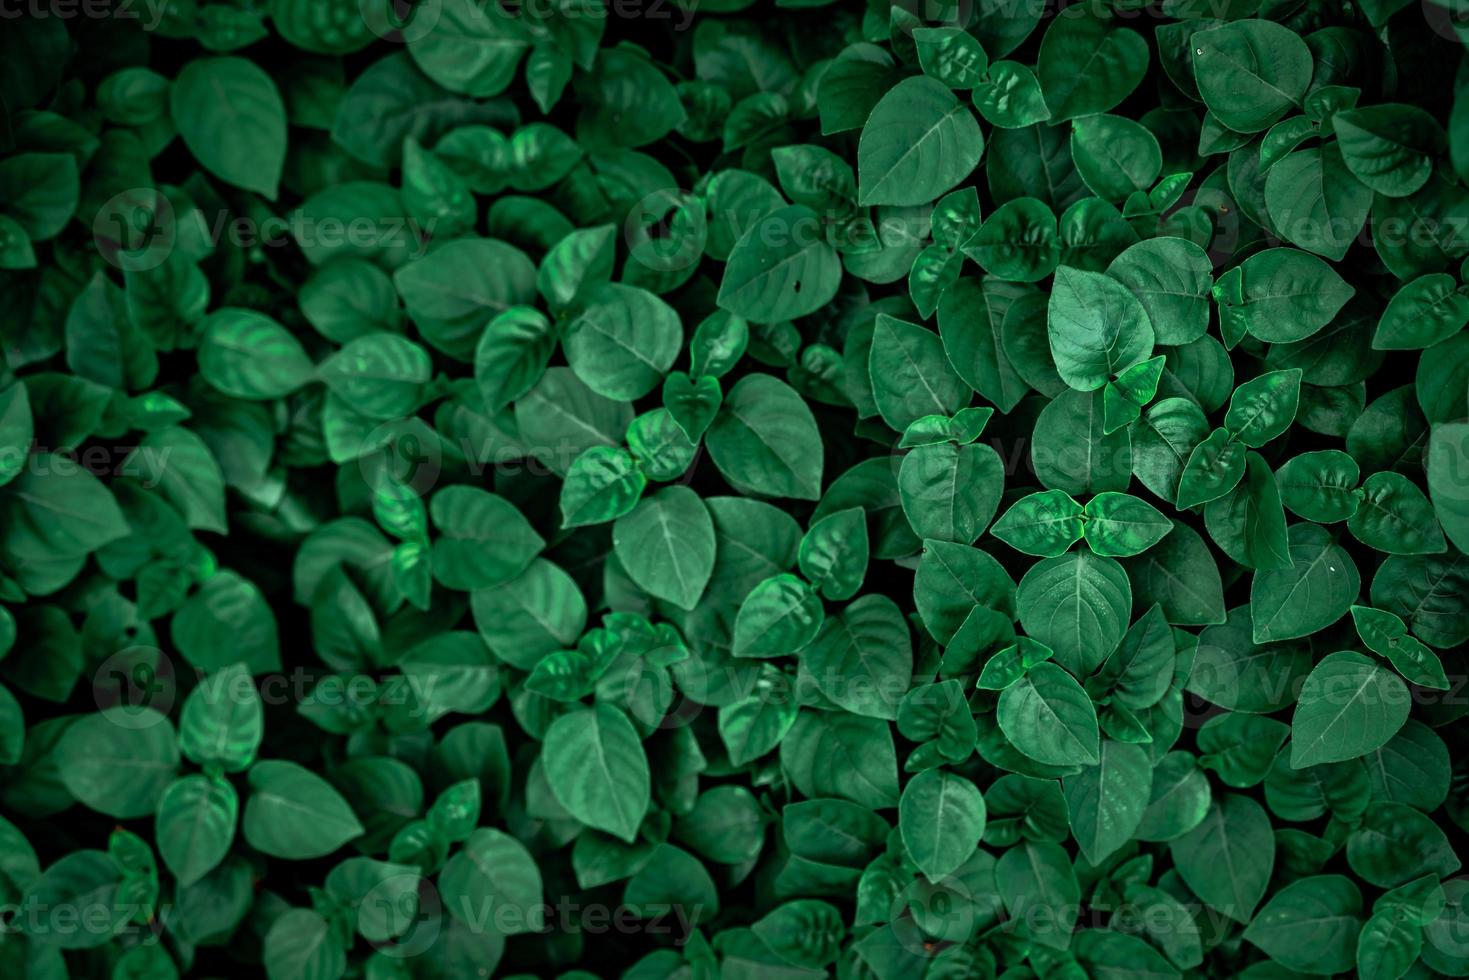 densas folhas verdes escuras no jardim. textura de folha verde esmeralda. abstrato da natureza. floresta tropical. acima vista de folhas verdes escuras com padrão natural. papel de parede de plantas tropicais. vegetação foto